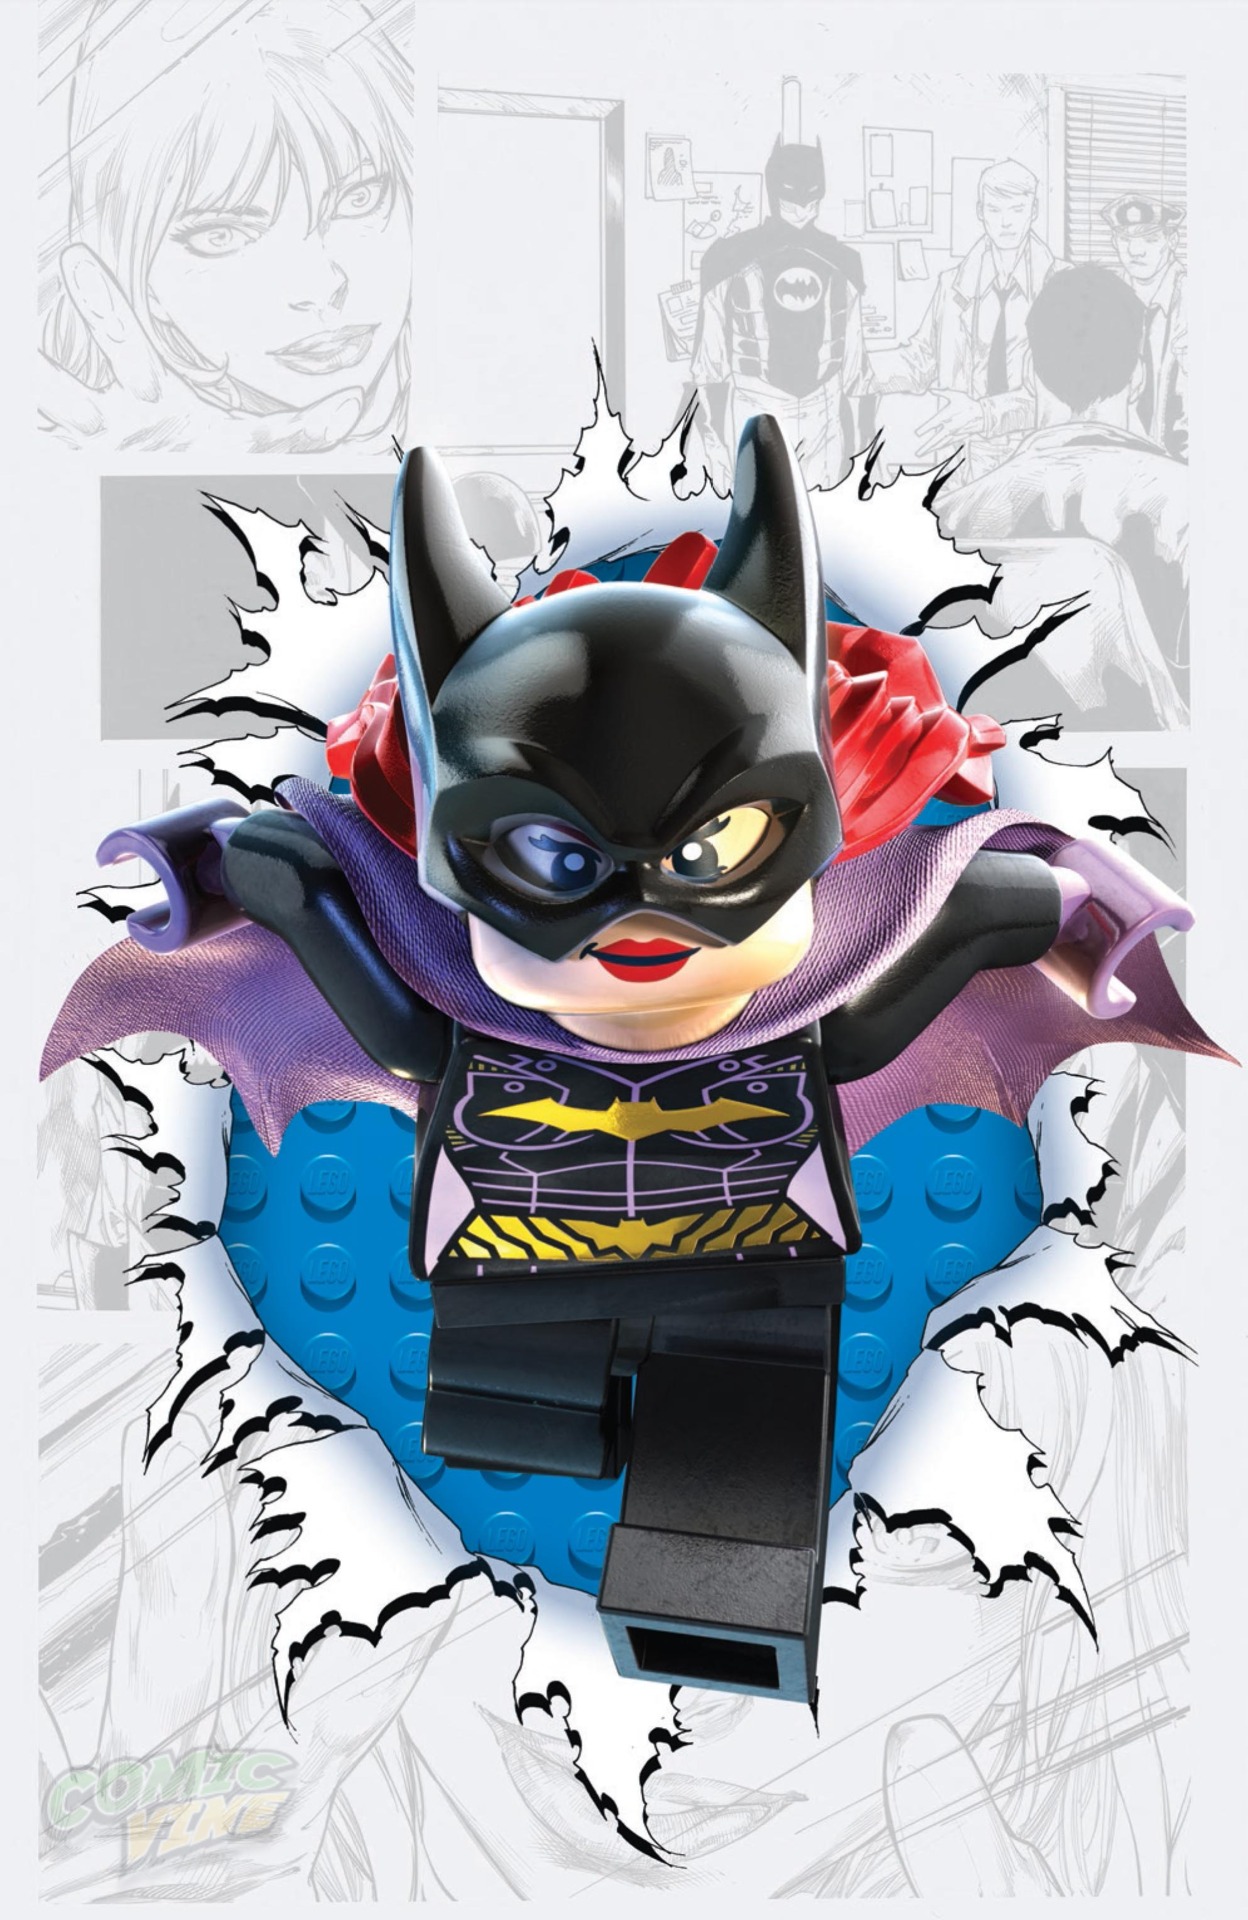 Batgirl #36